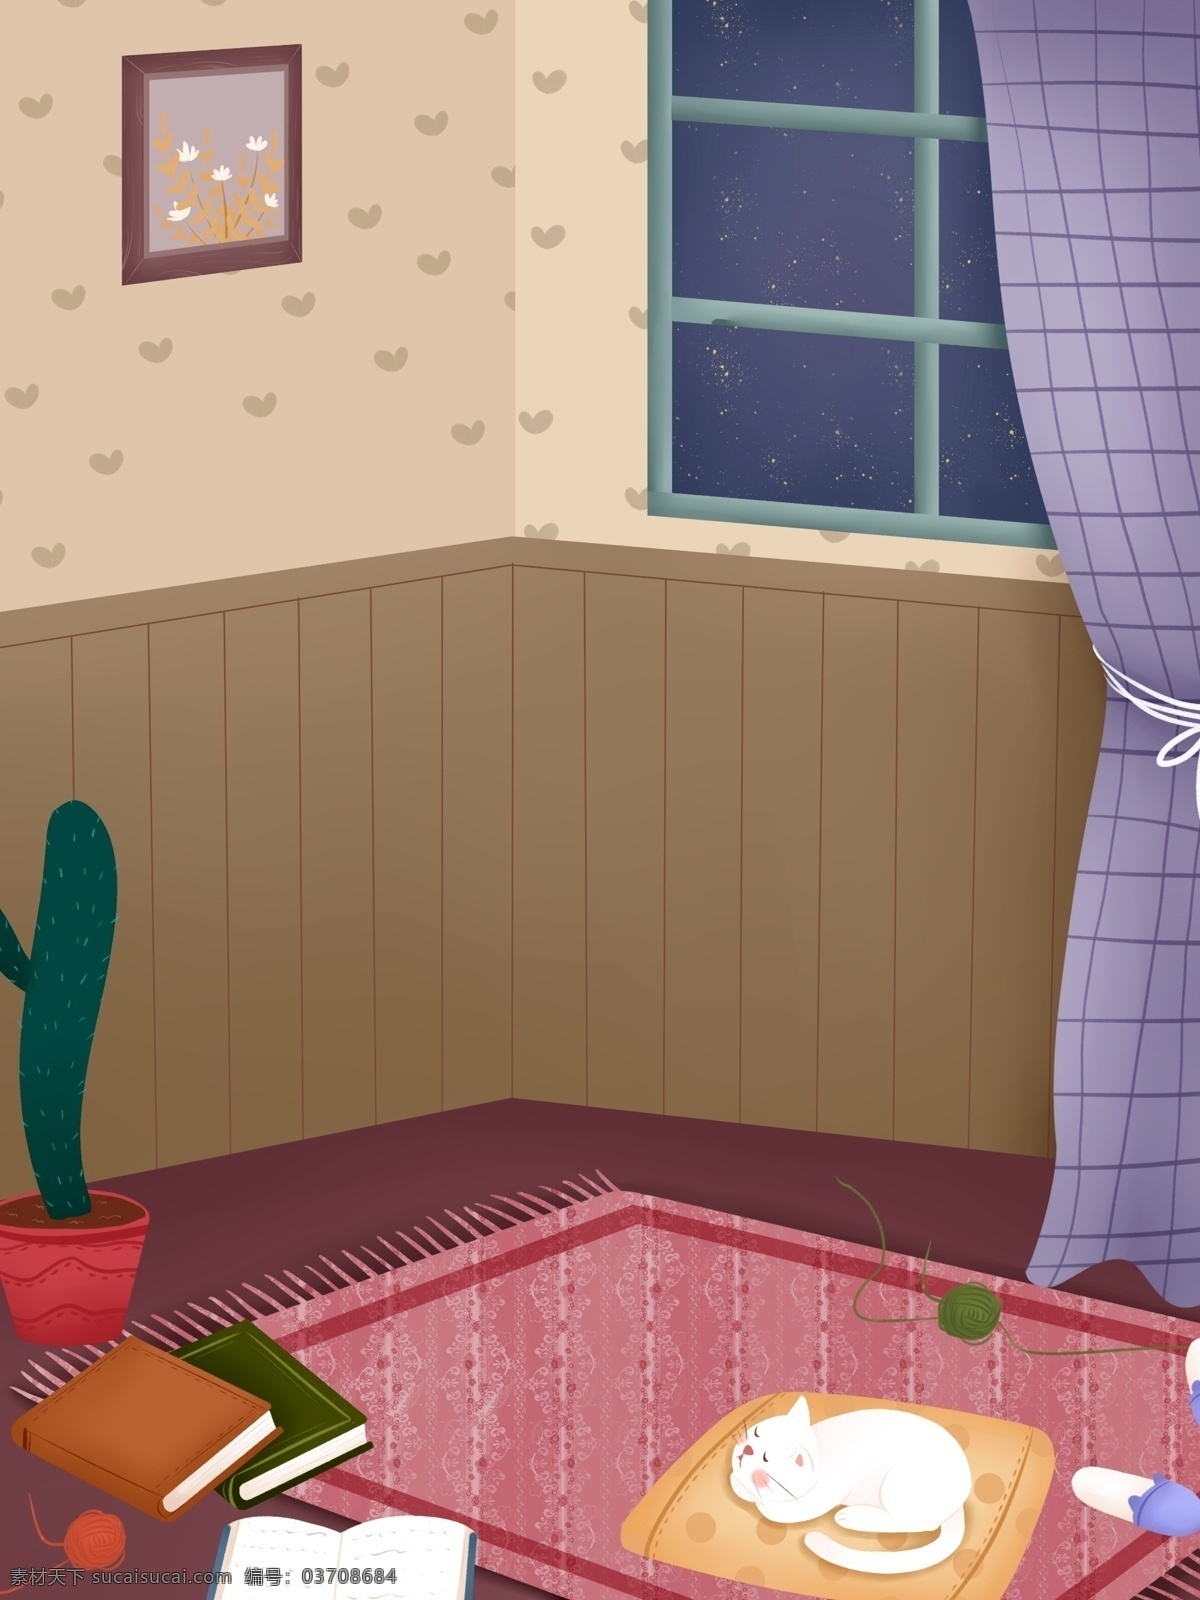 简约 家居 室 愉 场景 背景 植物 背景图 创意 仙人掌 地毯 彩绘背景 背景展板 促销背景 背景展板图